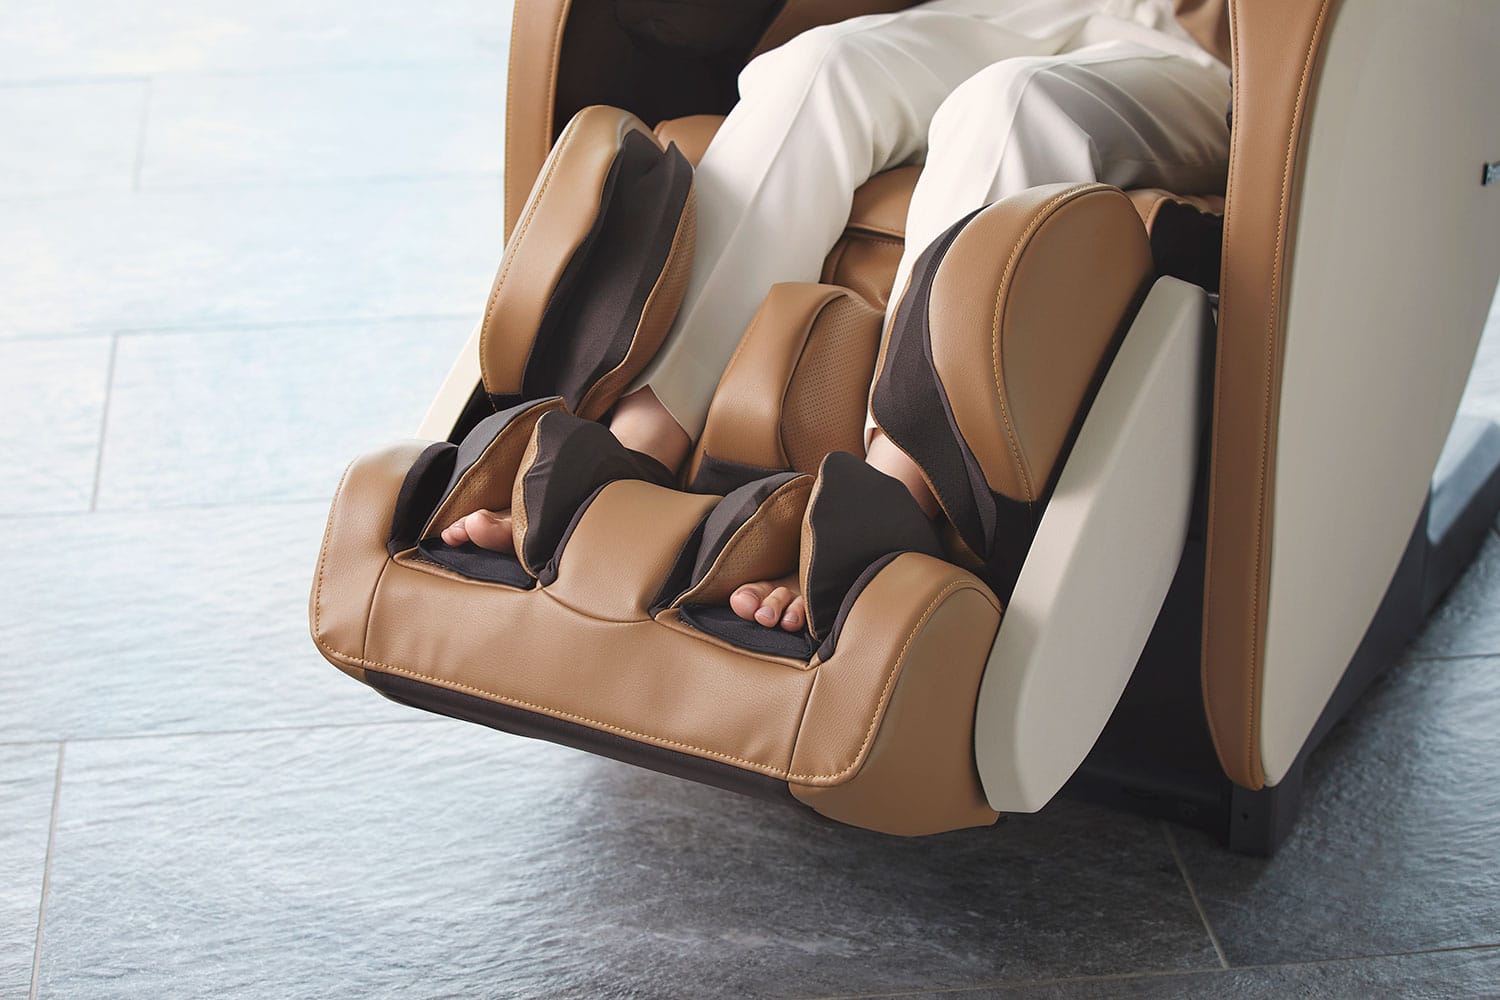 Panasonic MAF1 Zero Gravity Compact Full Body Massage Chair